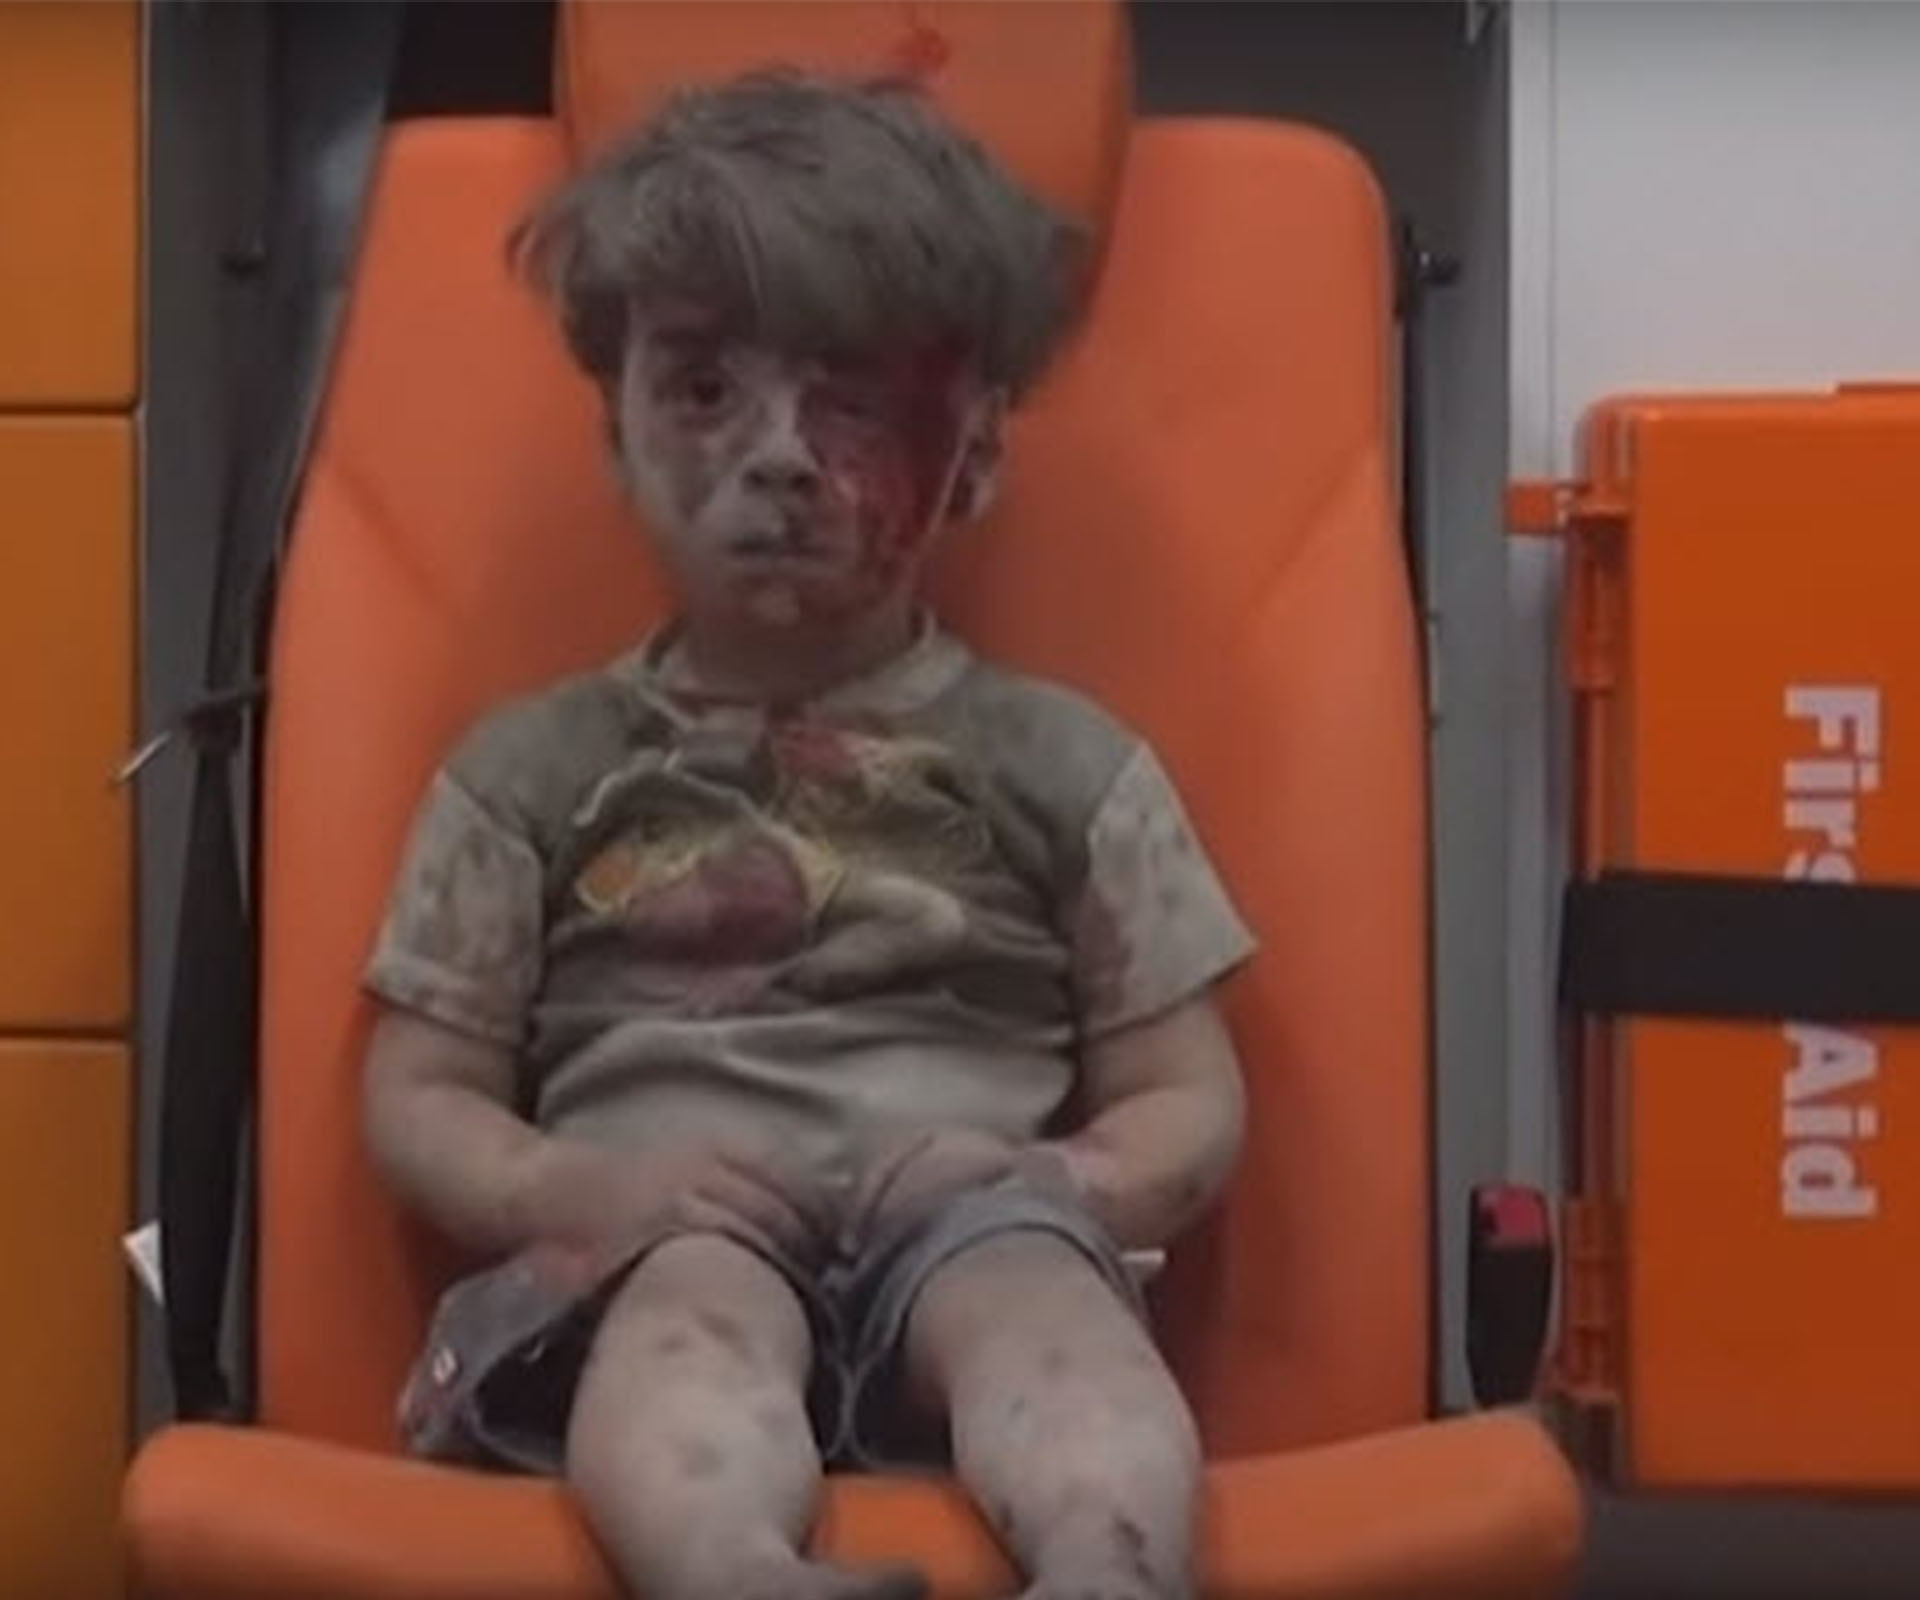 Syrian boy injured in airstrike